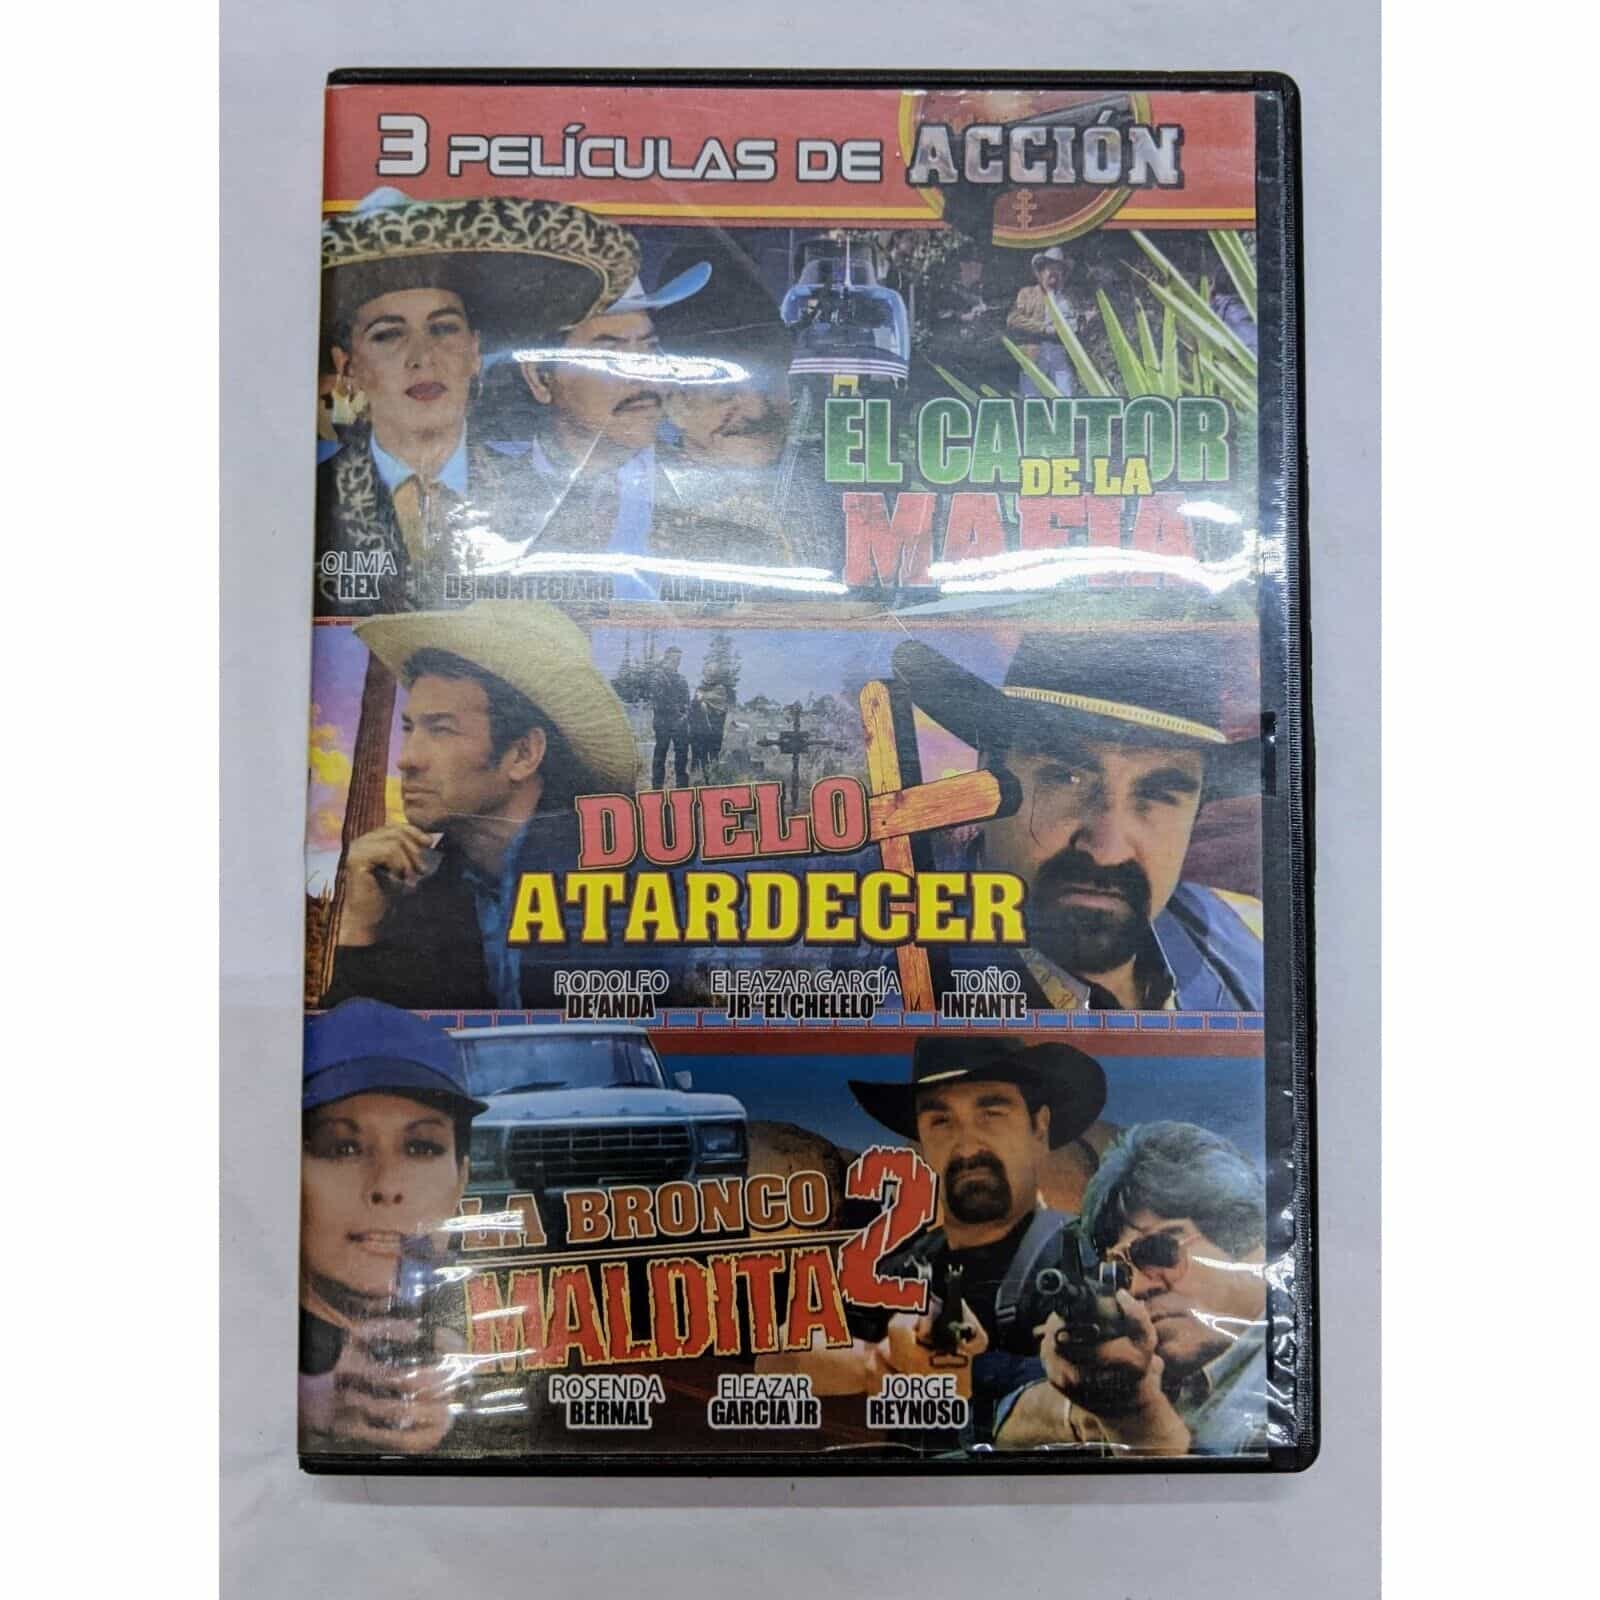 3 Peliculas De Accion DVD Movie